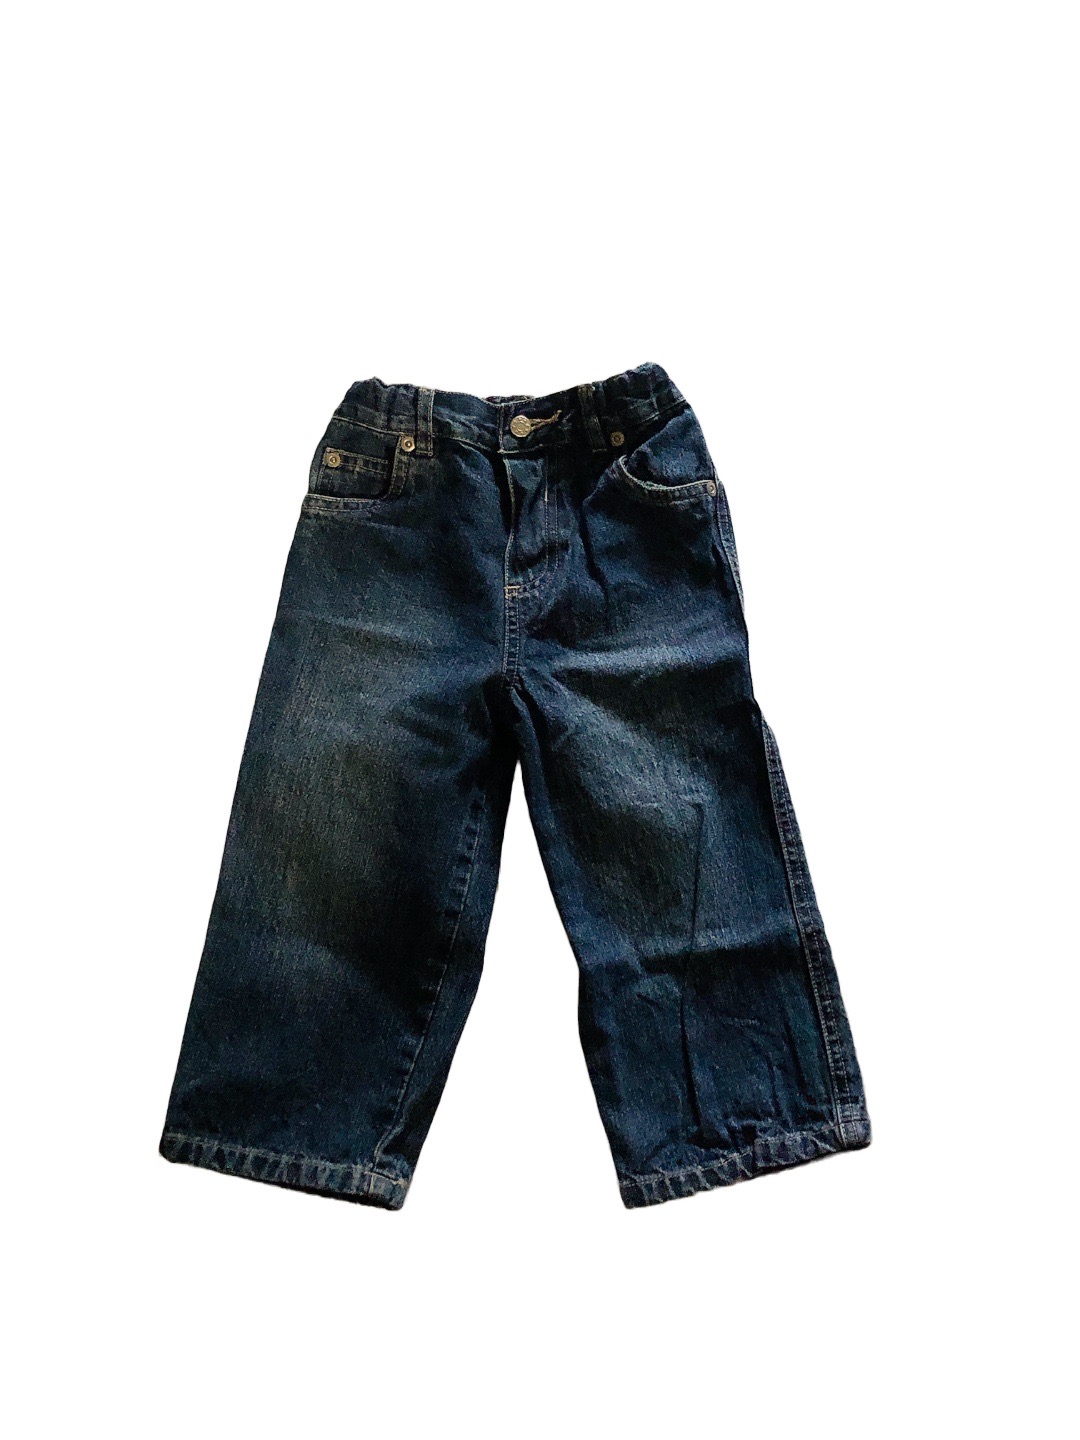 《Mamaway》兒童牛仔褲(18m-24m)
NT$199